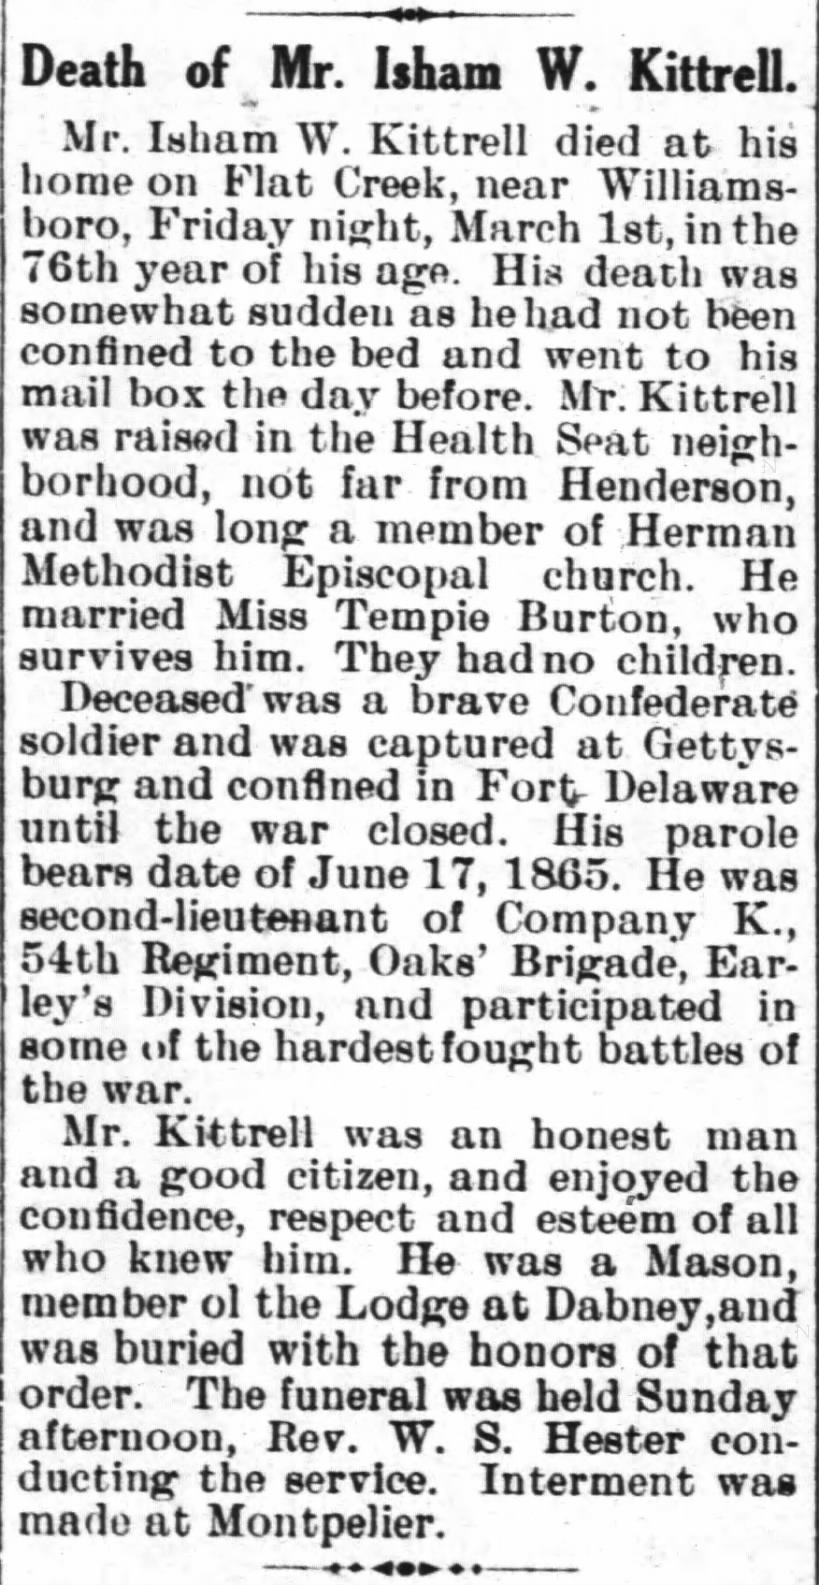 Death of Isham W. Kittrell (7 Mar 1907 Henderson Gold Leaf)